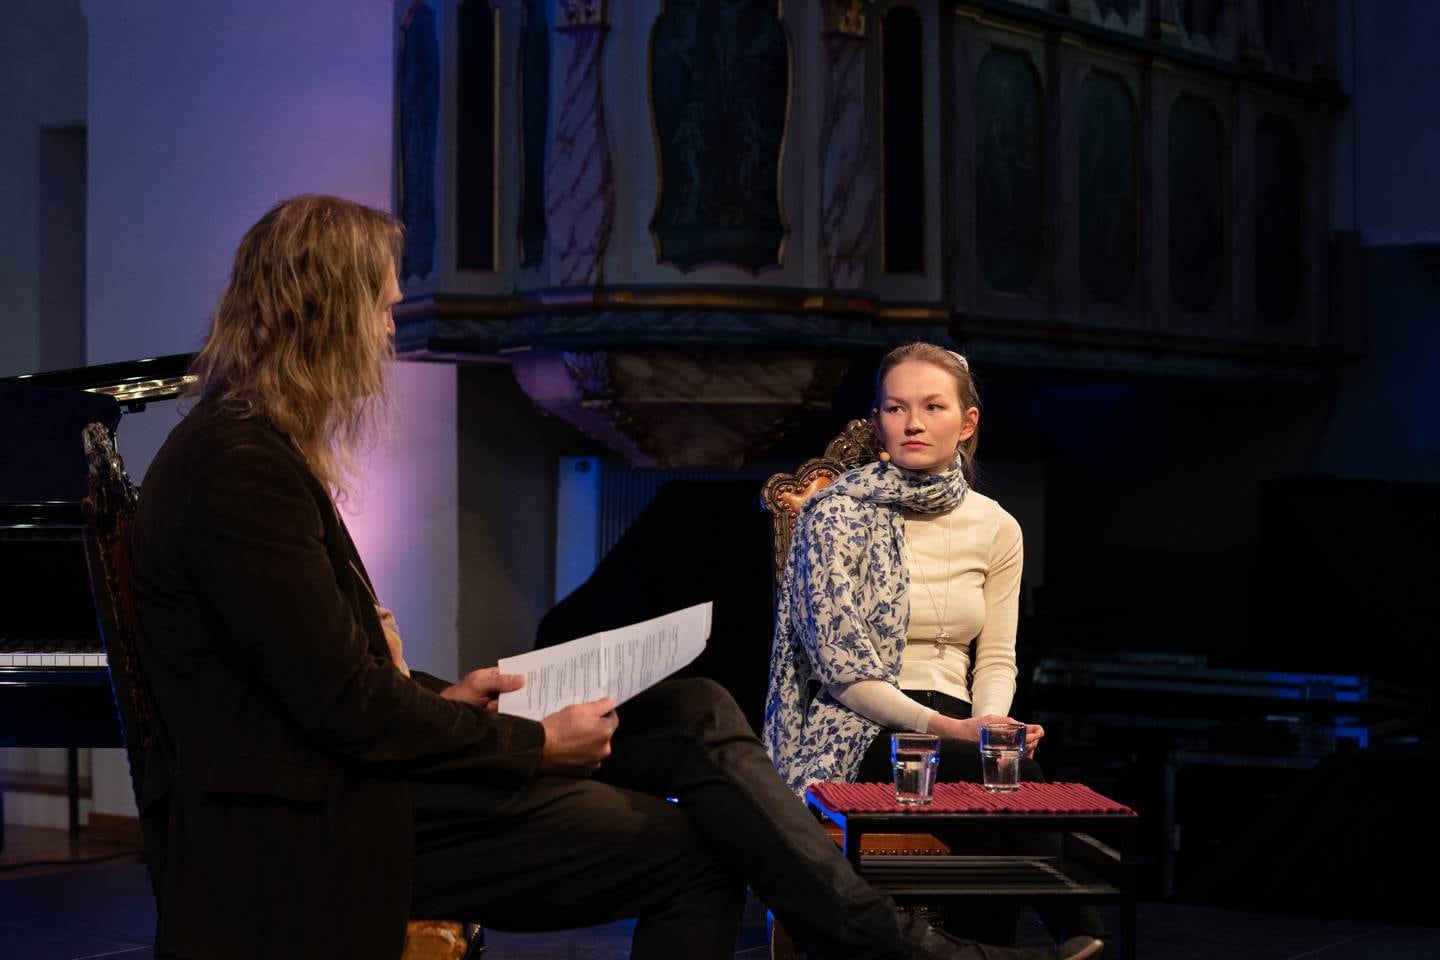 31.07.22 Olavsfest, Trondheim. MinTro med Marja Mortensson i Vår Frue Kirke.